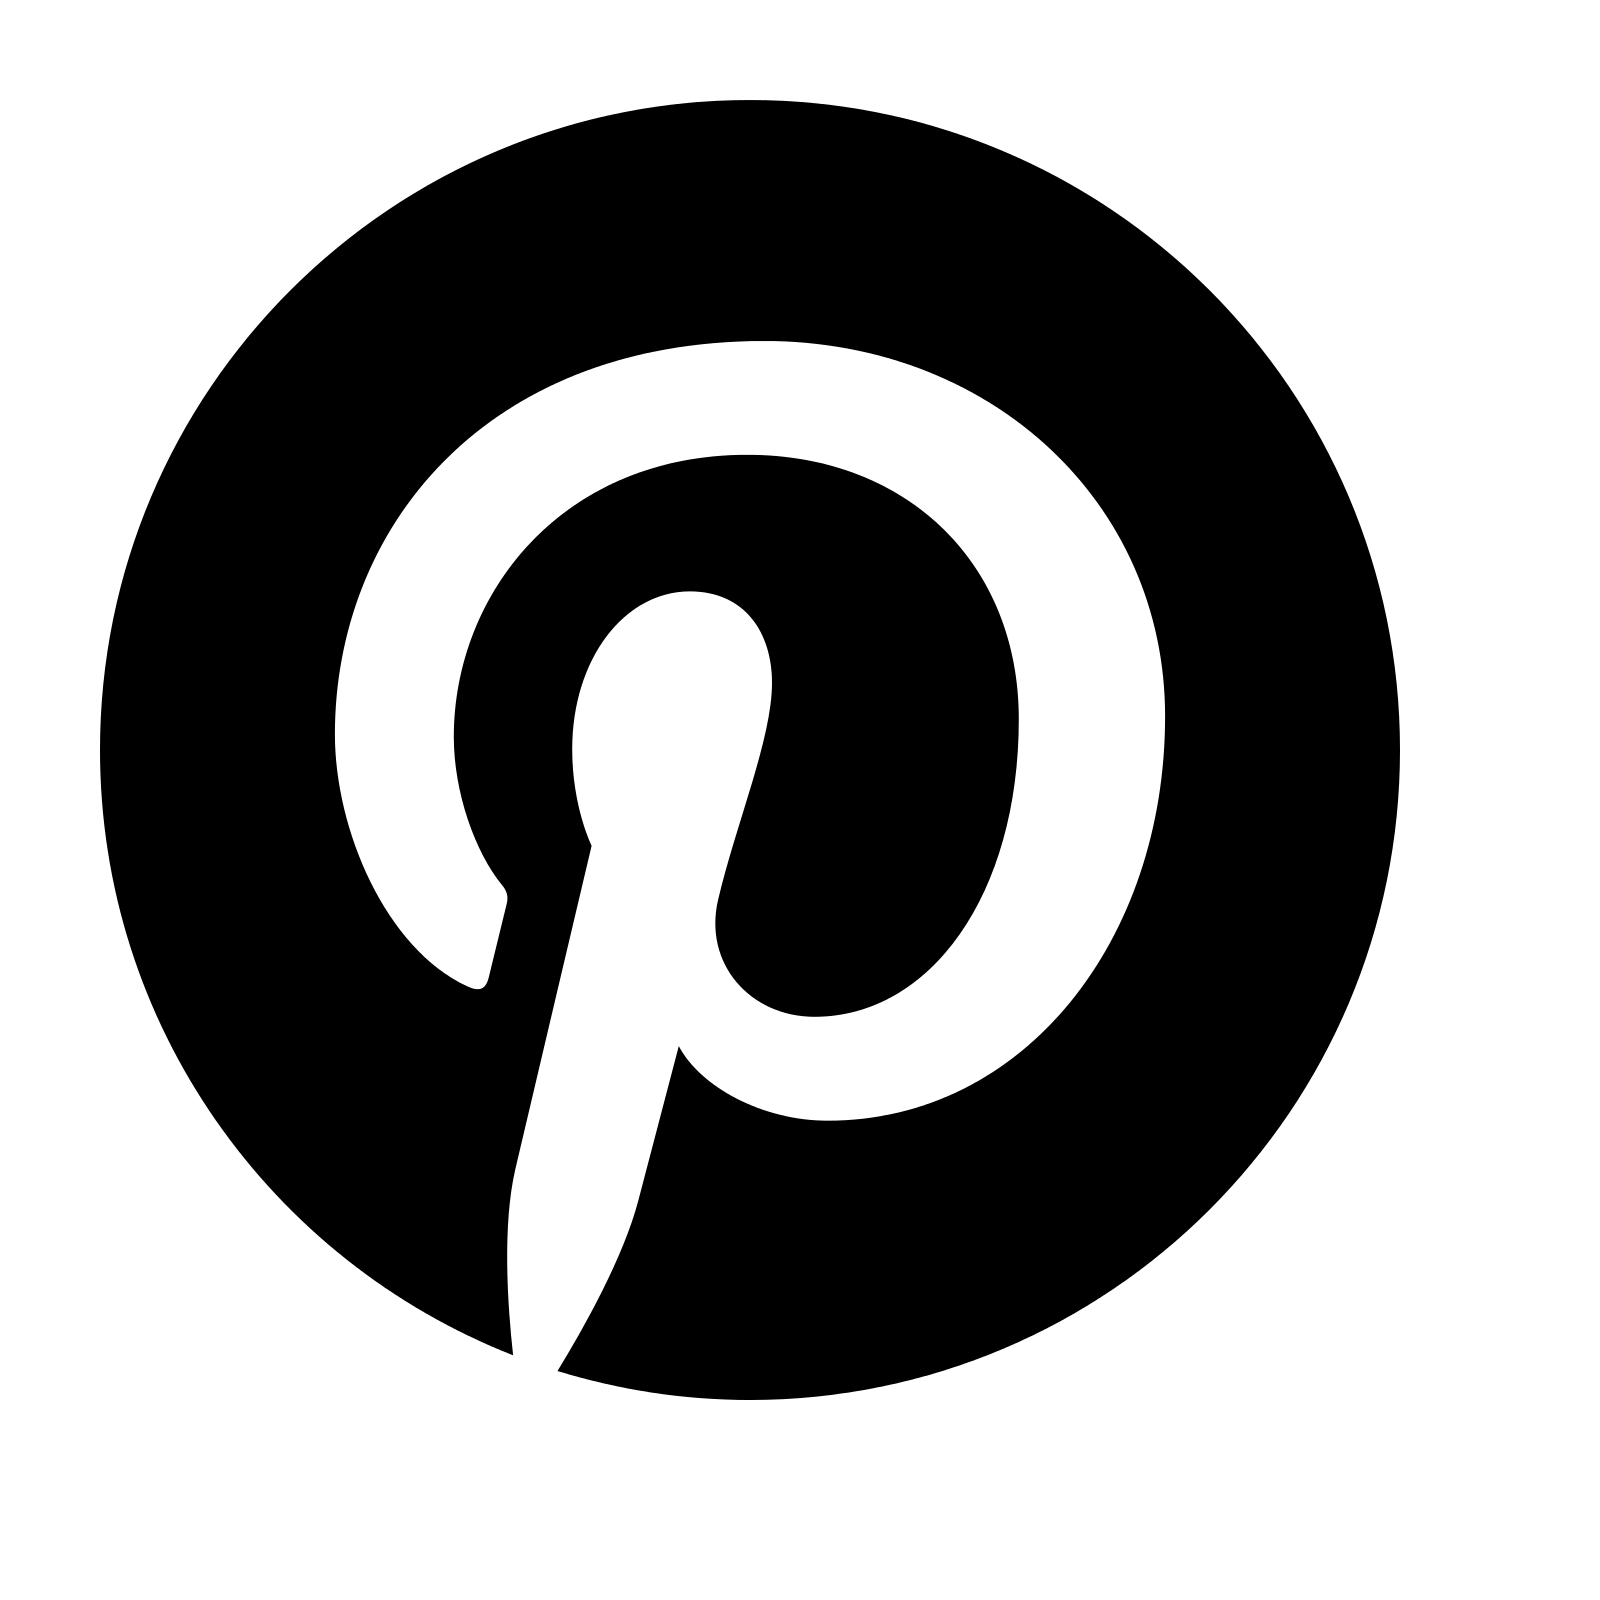 Circle P Logo - Black p Logos